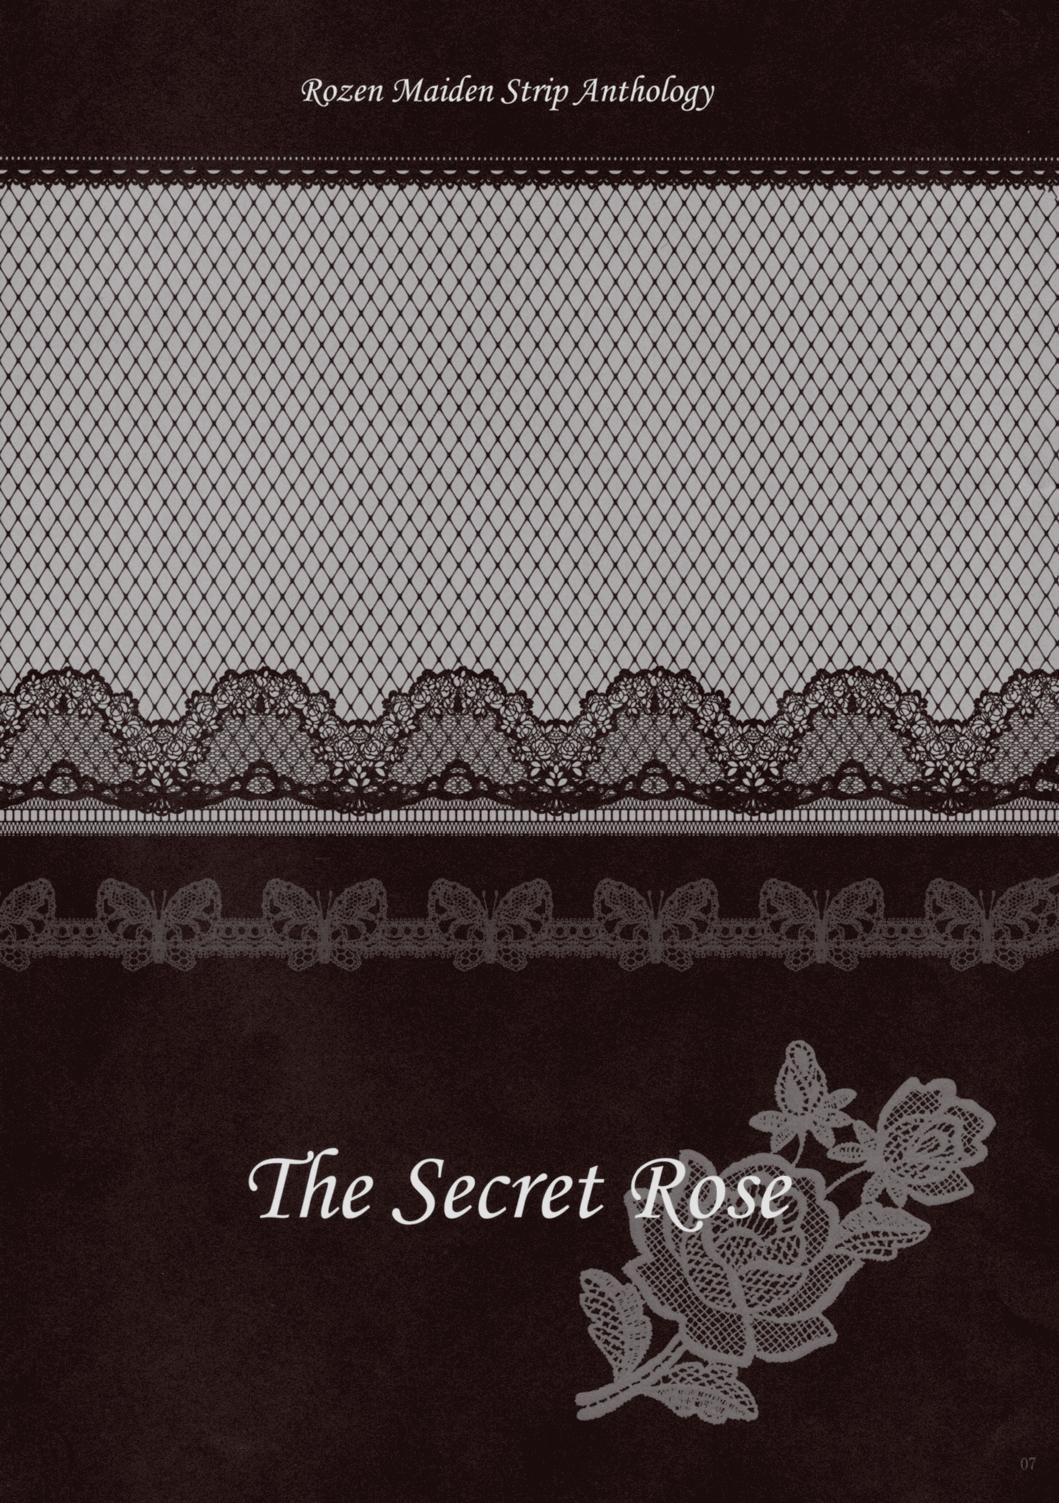 Gritona Rozen Maiden Strip Gallery "The Secret Rose" - Rozen maiden Storyline - Page 6